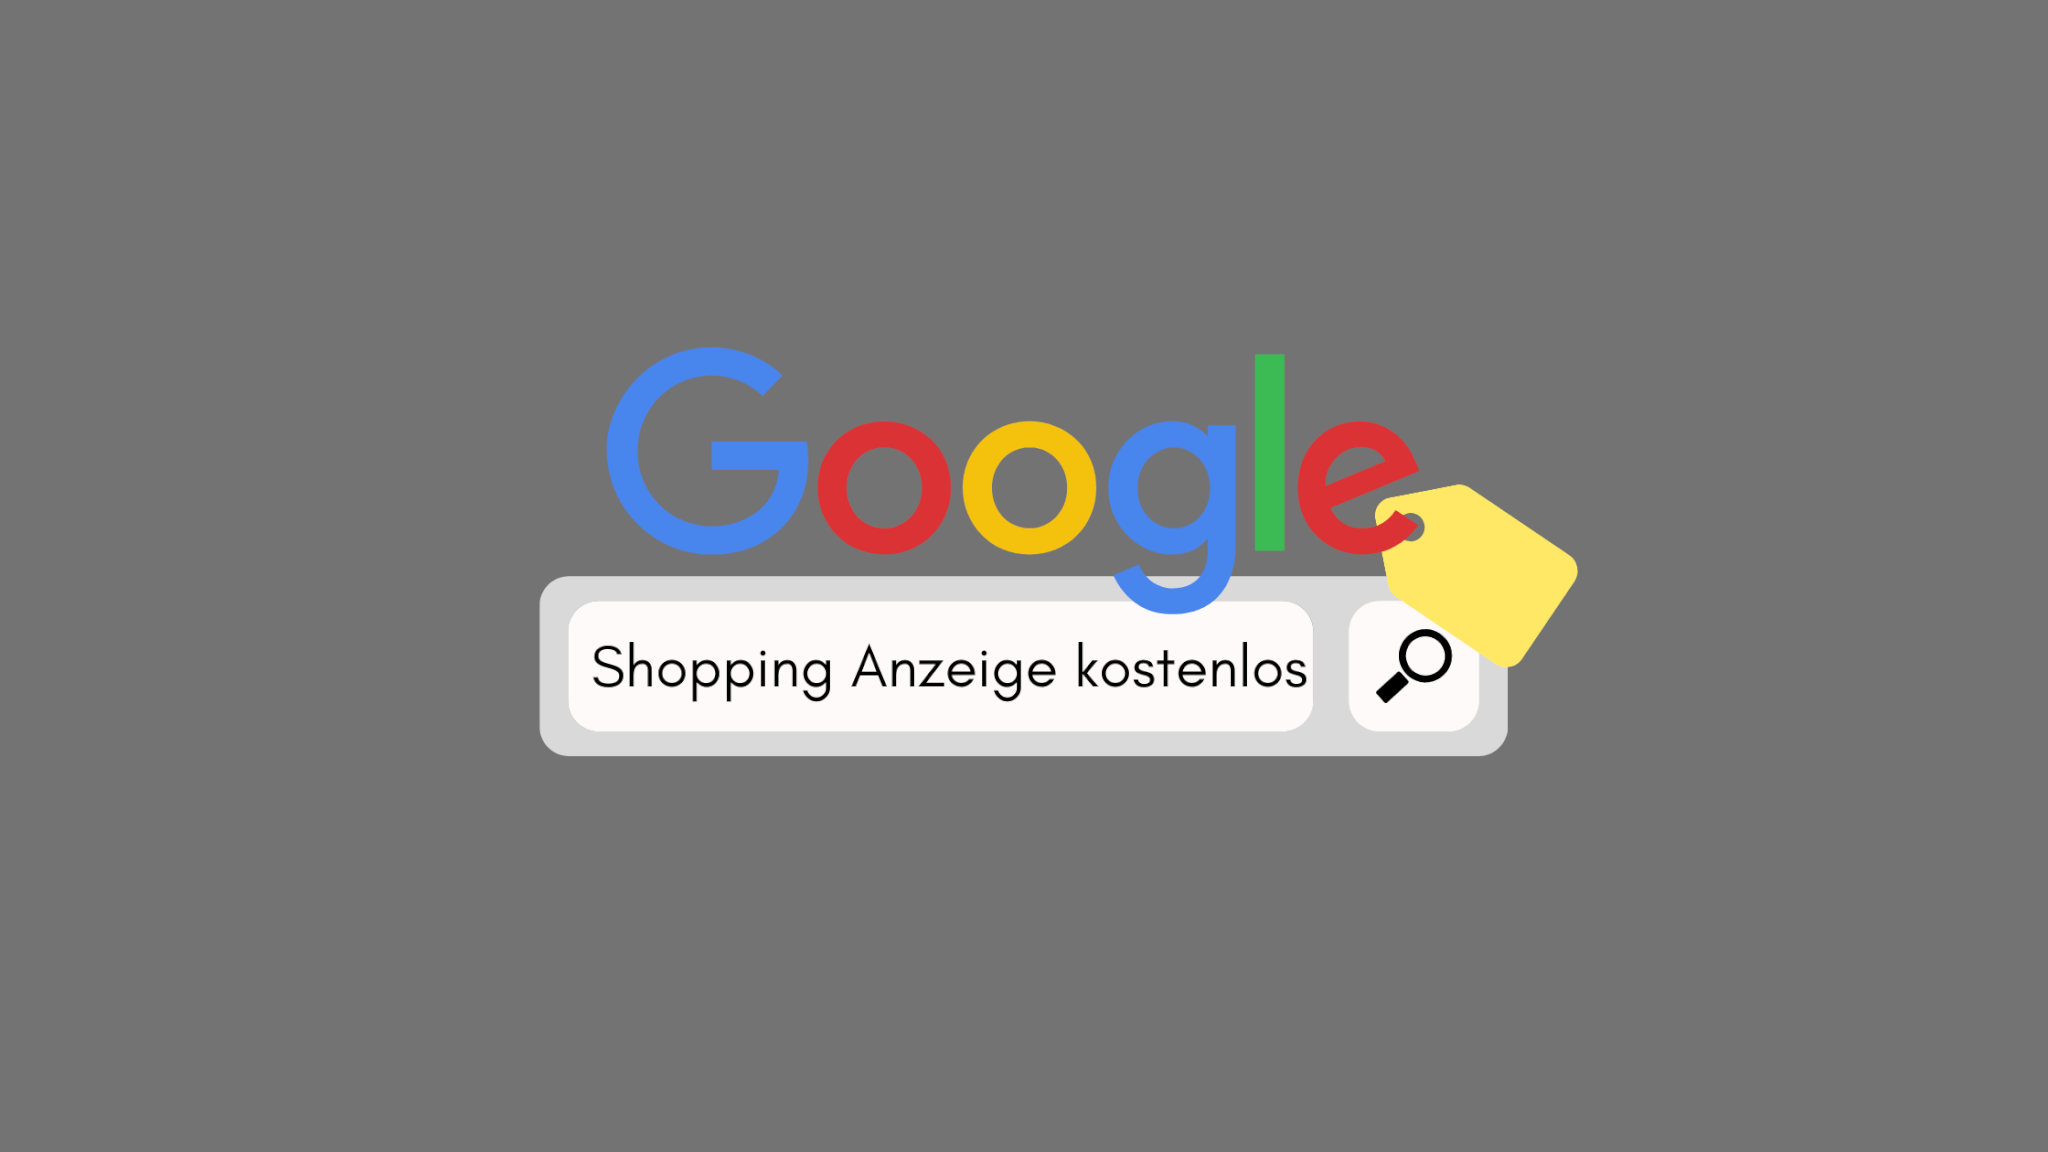 Google Suche Shopping Anzeige kostenlose